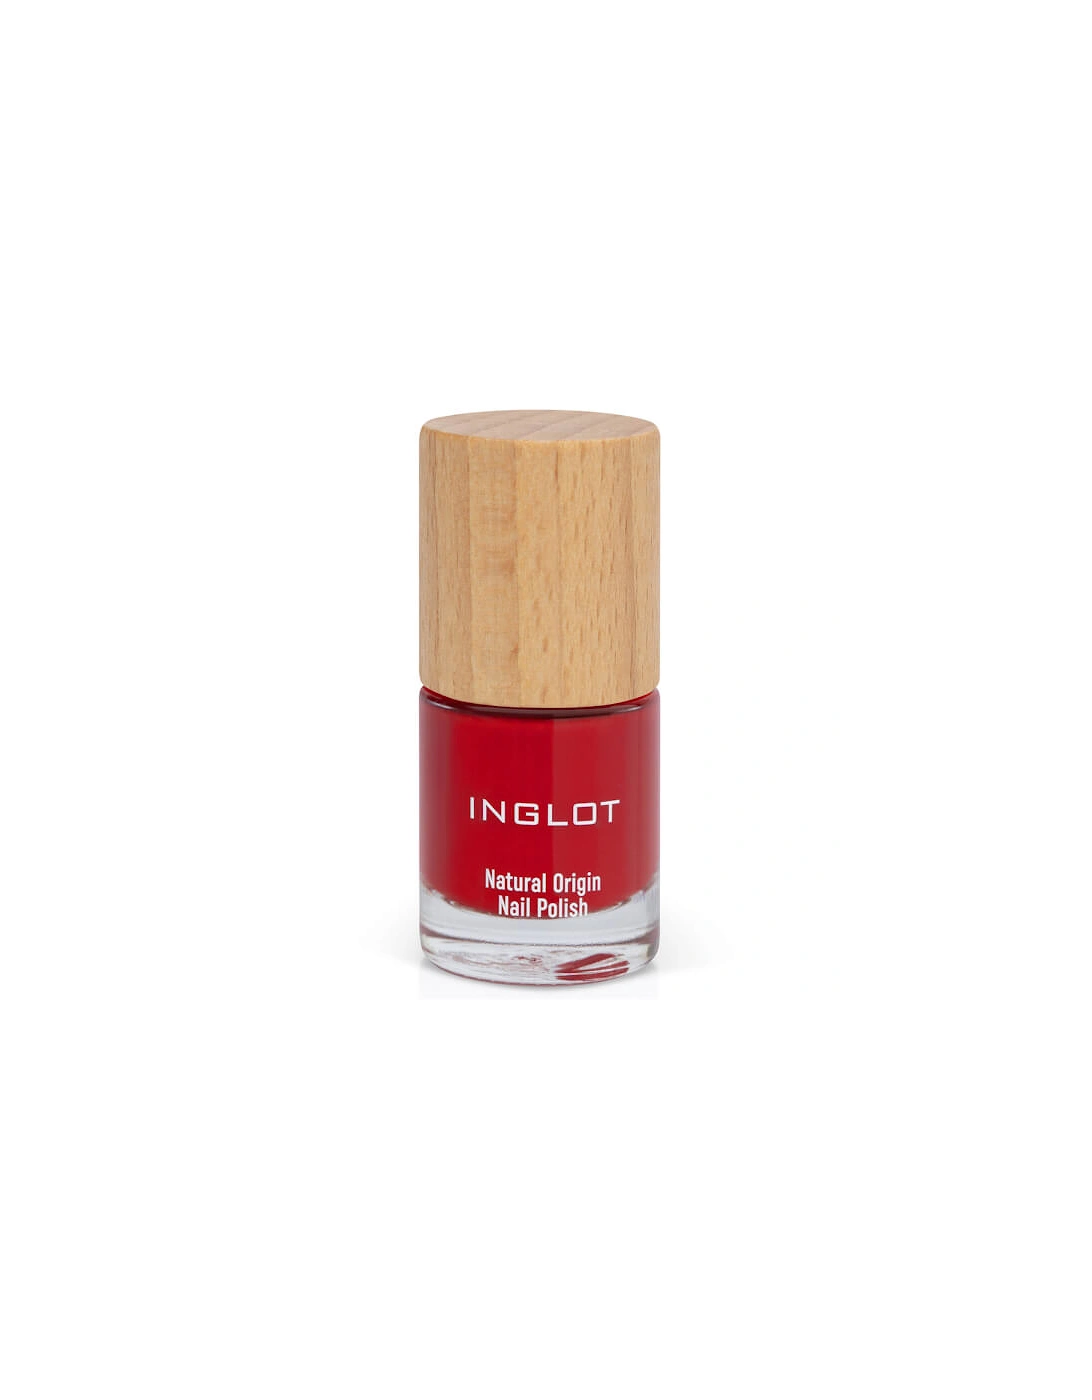 Natural Origin Nail Polish - Timeless Red 009, 2 of 1